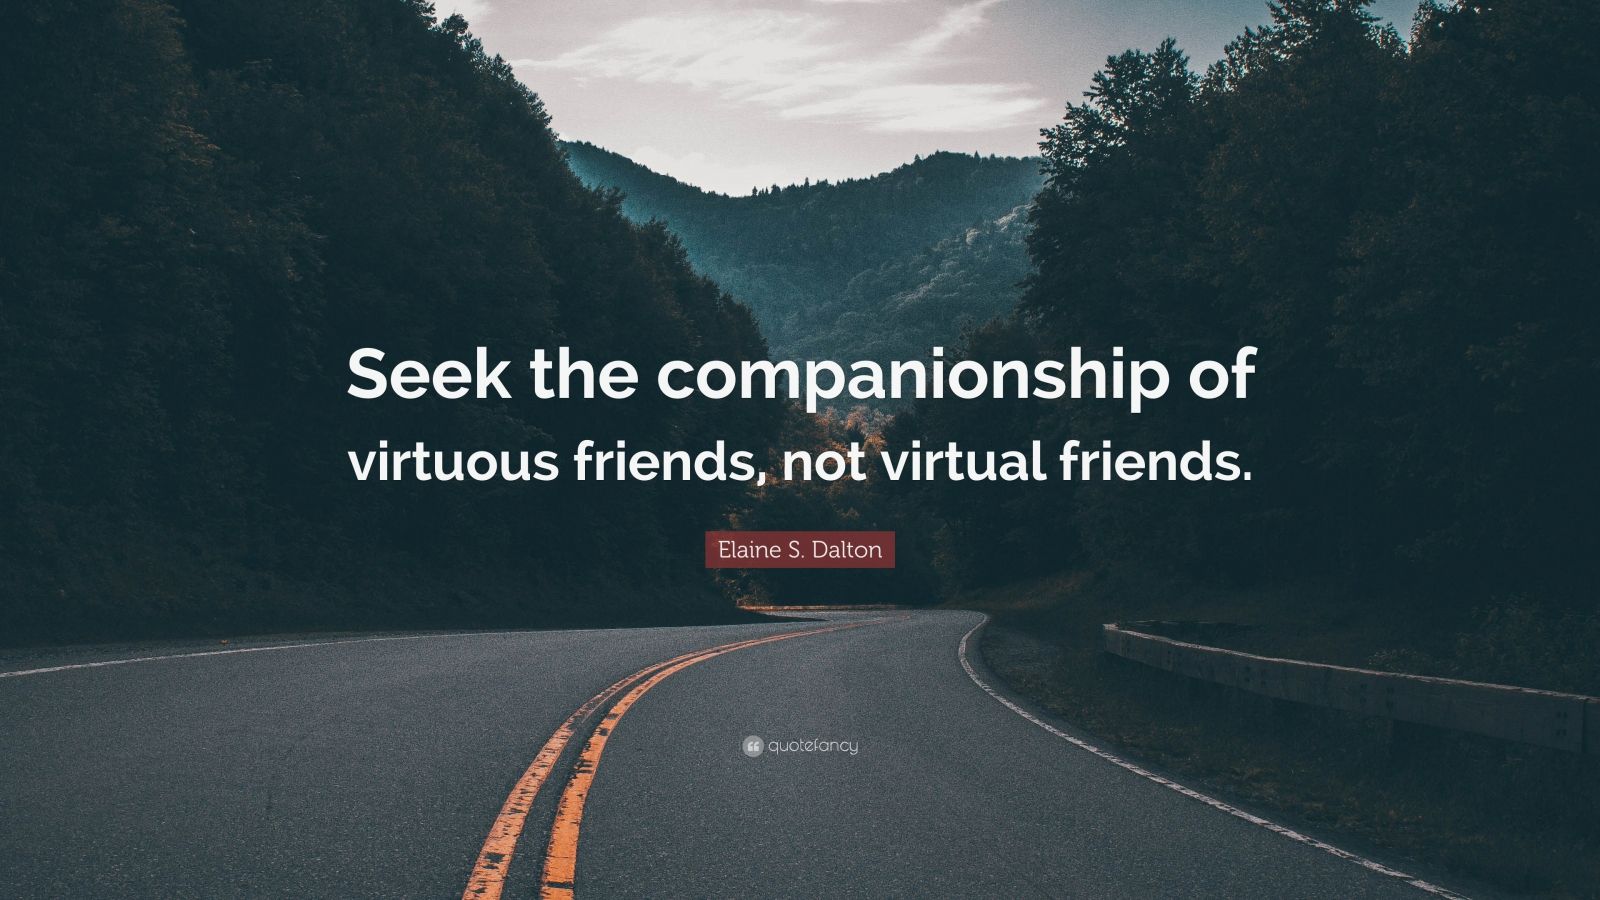 Elaine S. Dalton Quote: “Seek the companionship of virtuous friends ...